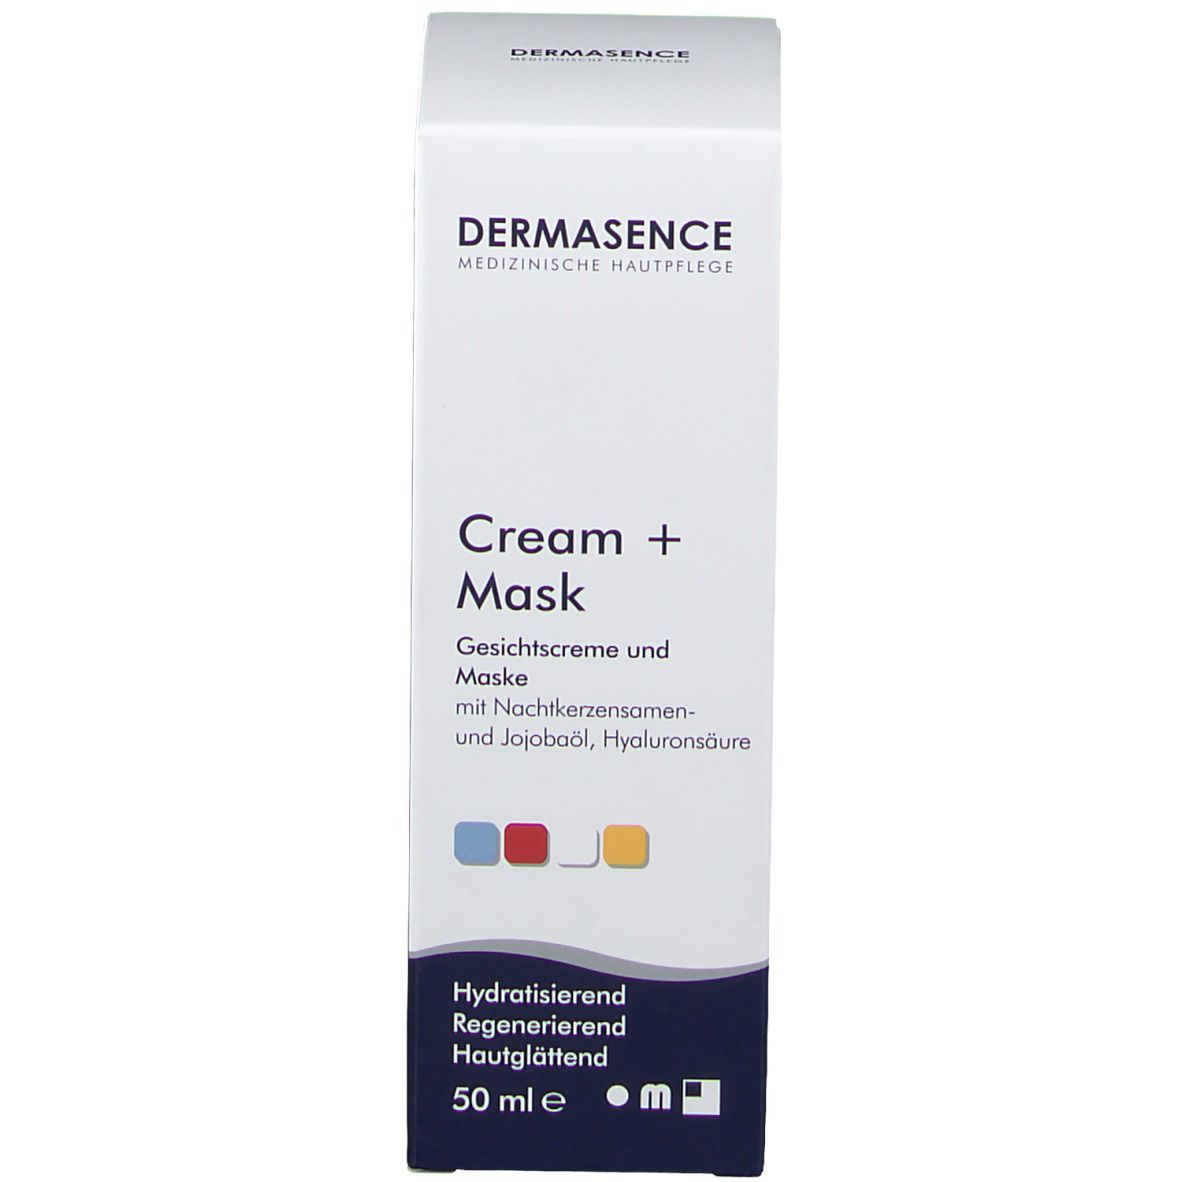 DERMASENCE cream + mask